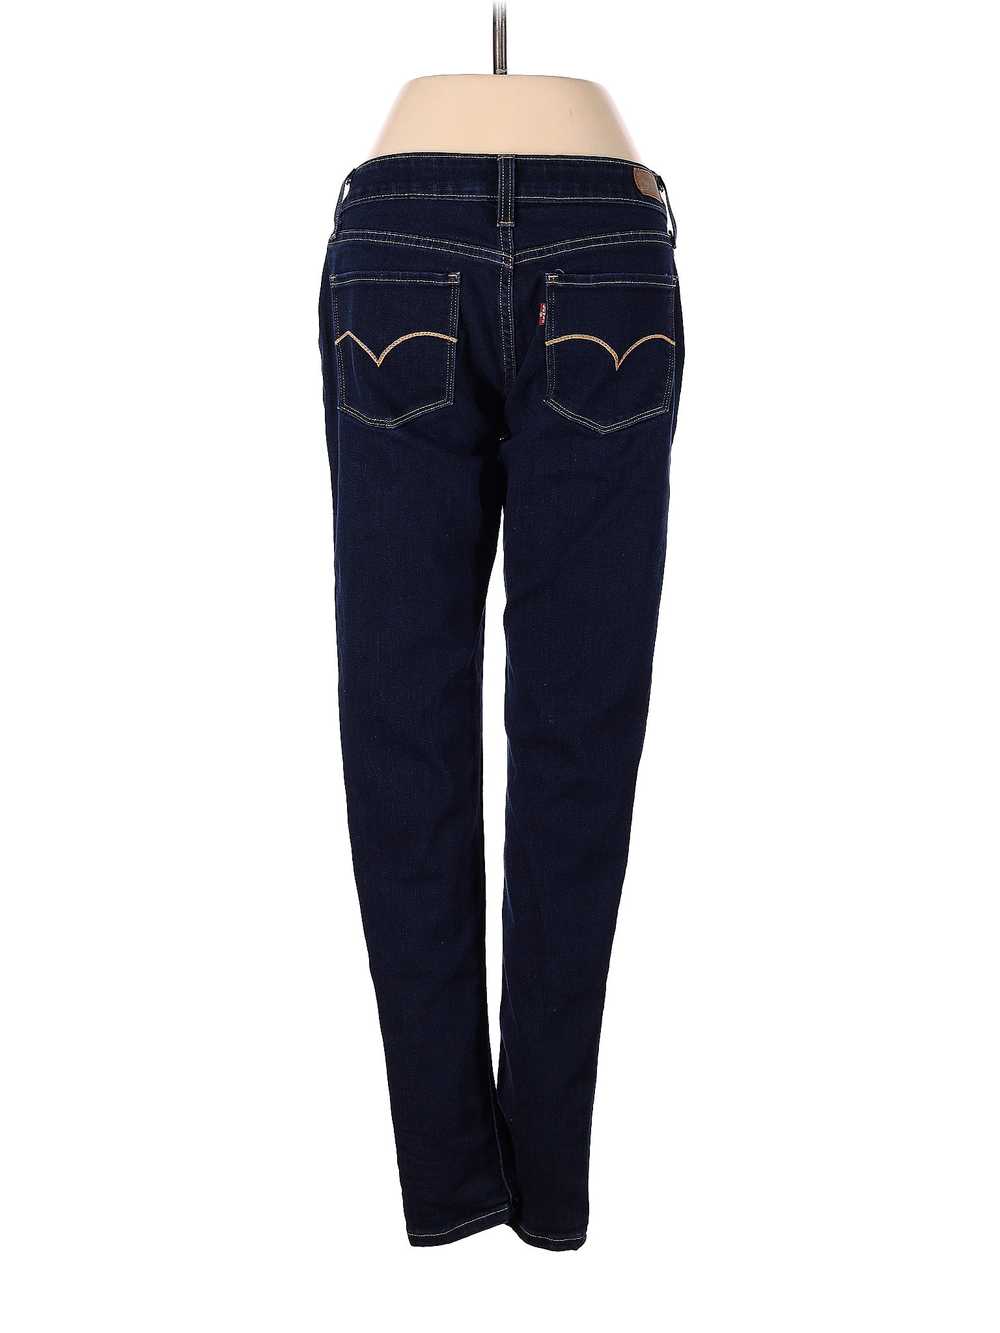 Levi's Women Blue Jeans 29W - image 2